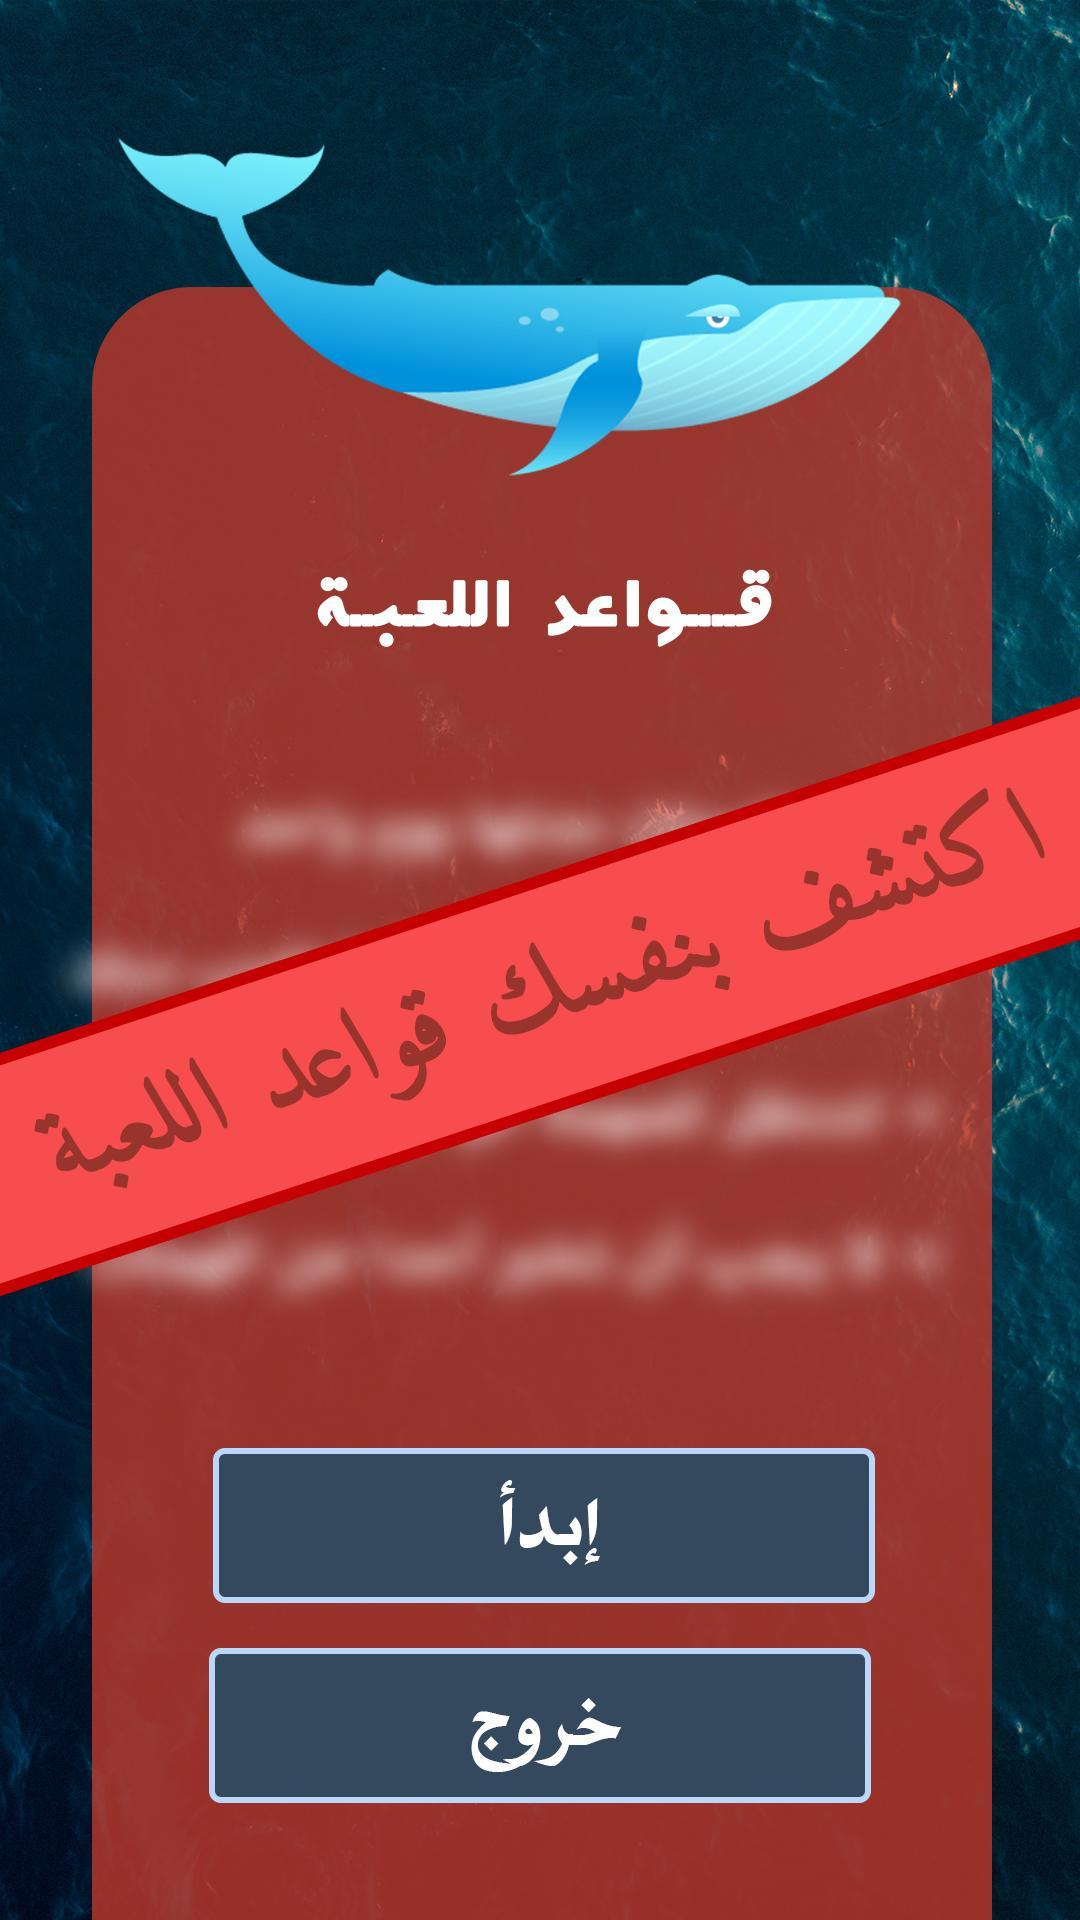 لعبة الحوت الأزرق: النسخة العربية Android के लिए APK डाउनलोड करें